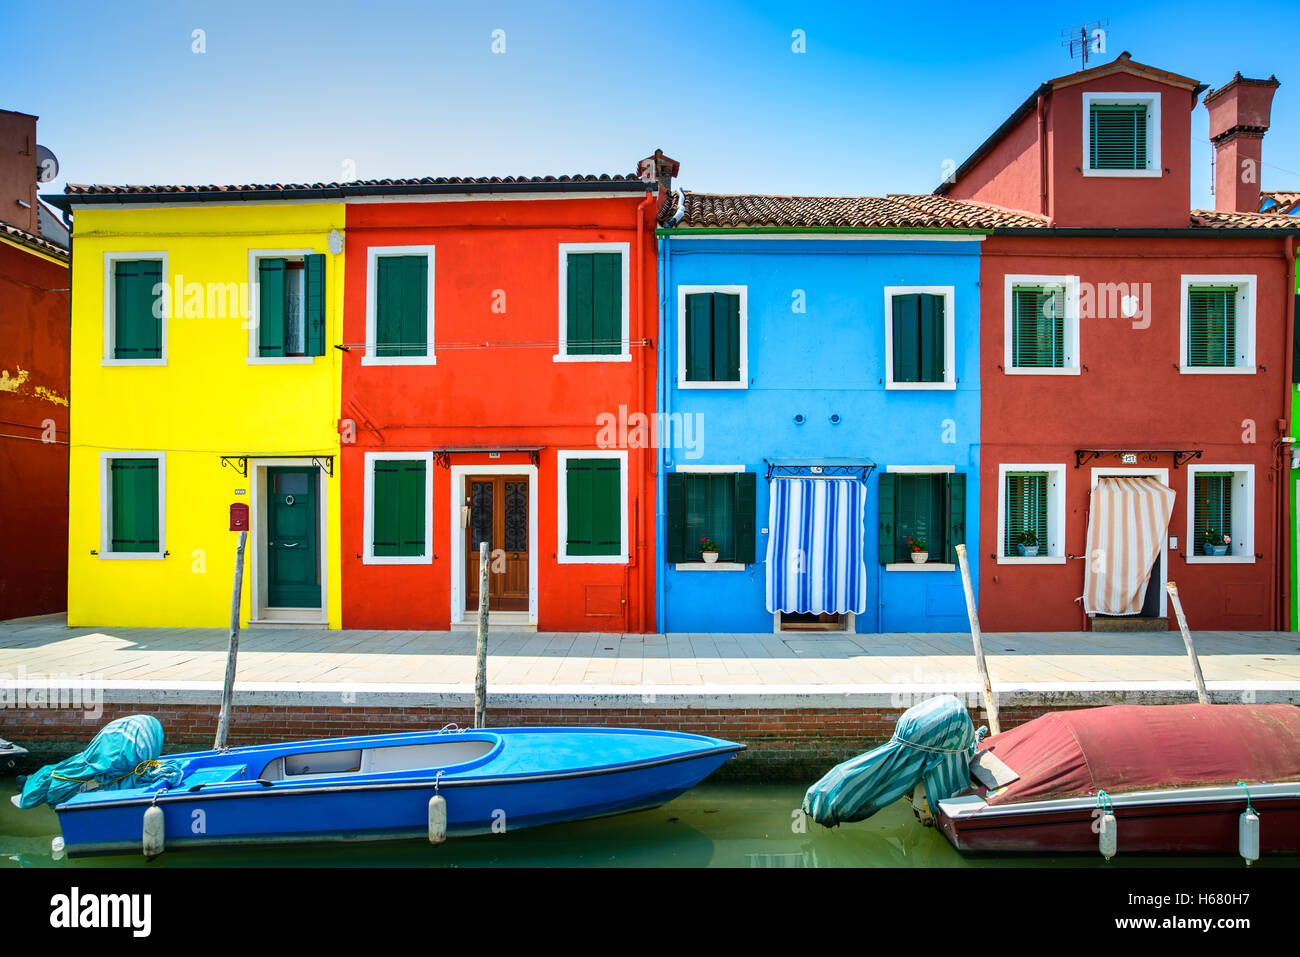 Vue de Venise, Burano island canal, maisons colorées et des bateaux, de l'Italie. Photos à longue exposition Banque D'Images